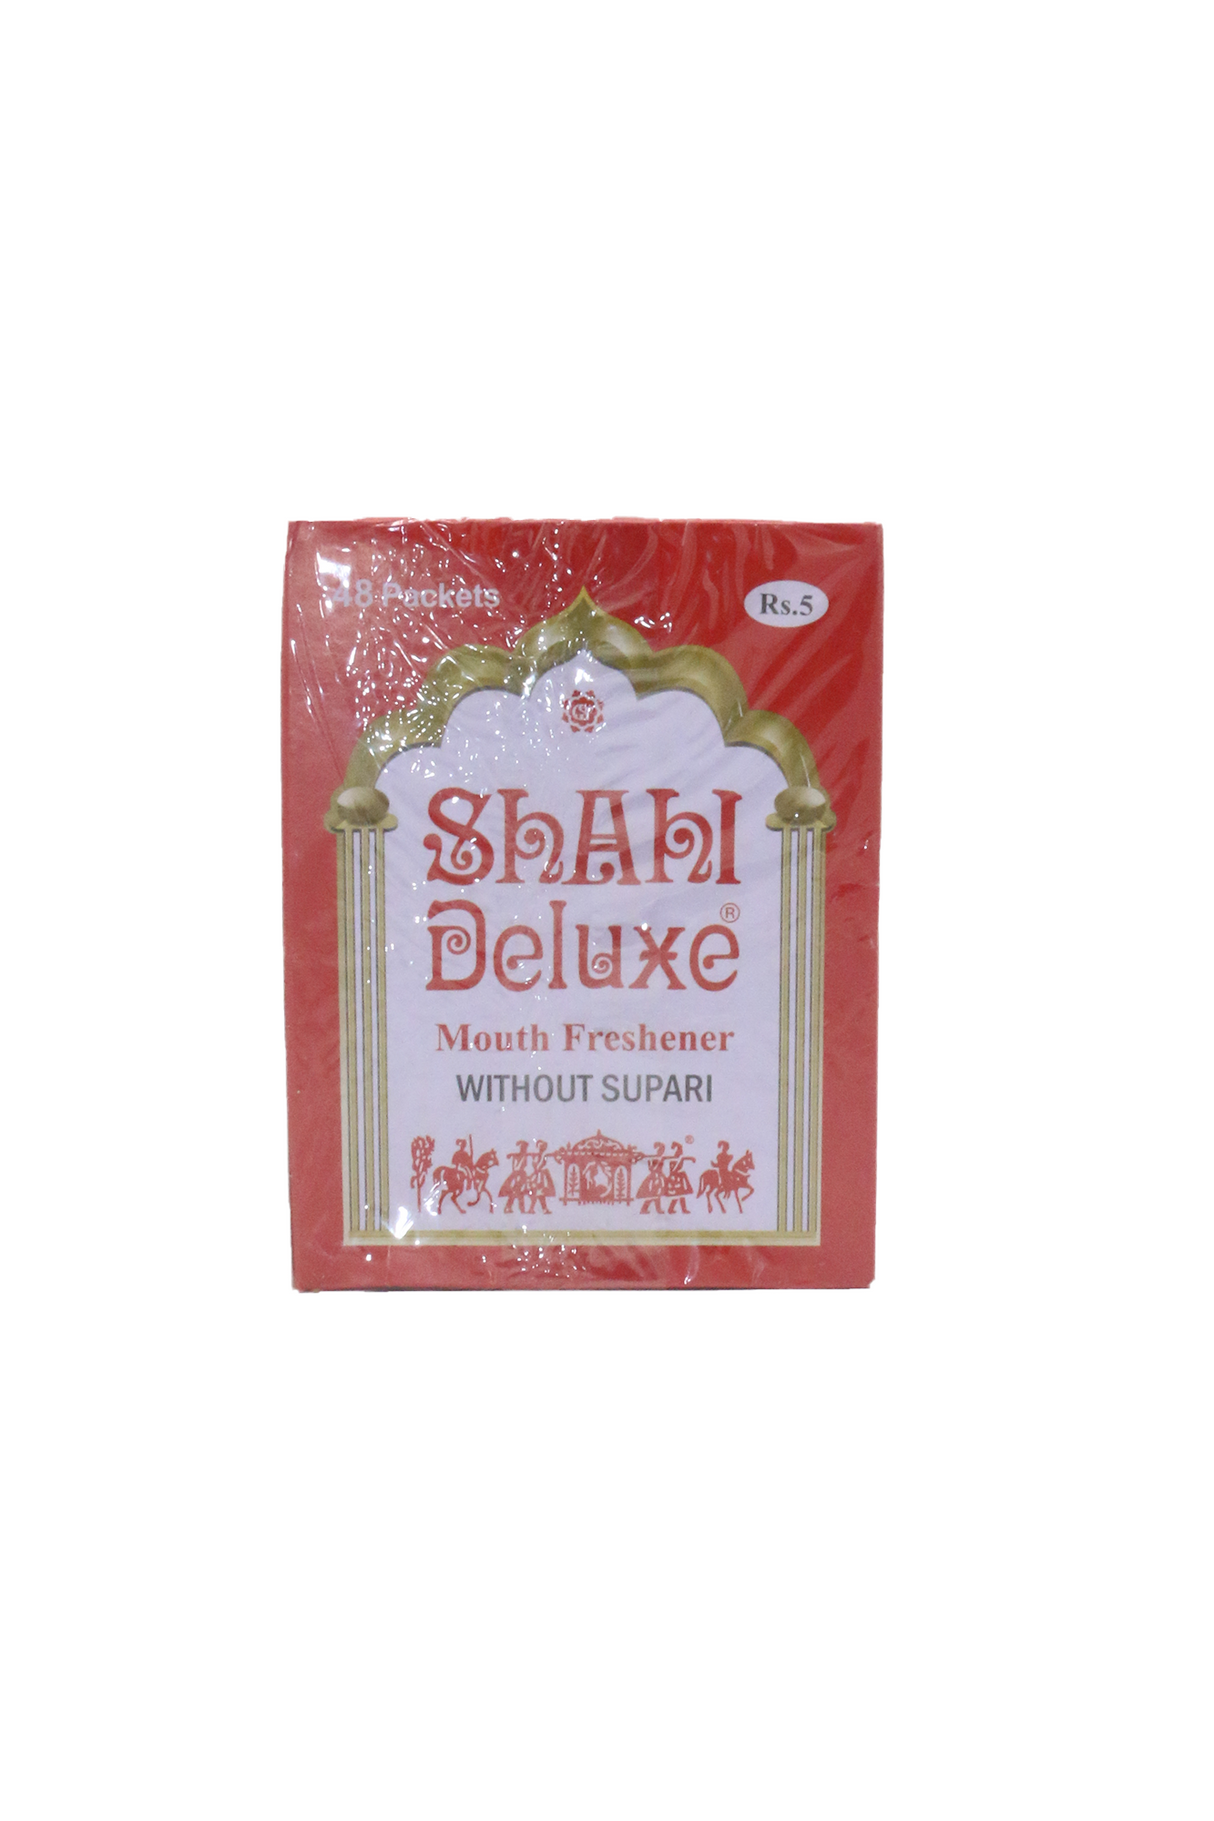 shahi mouth freshener delux rs5 48p